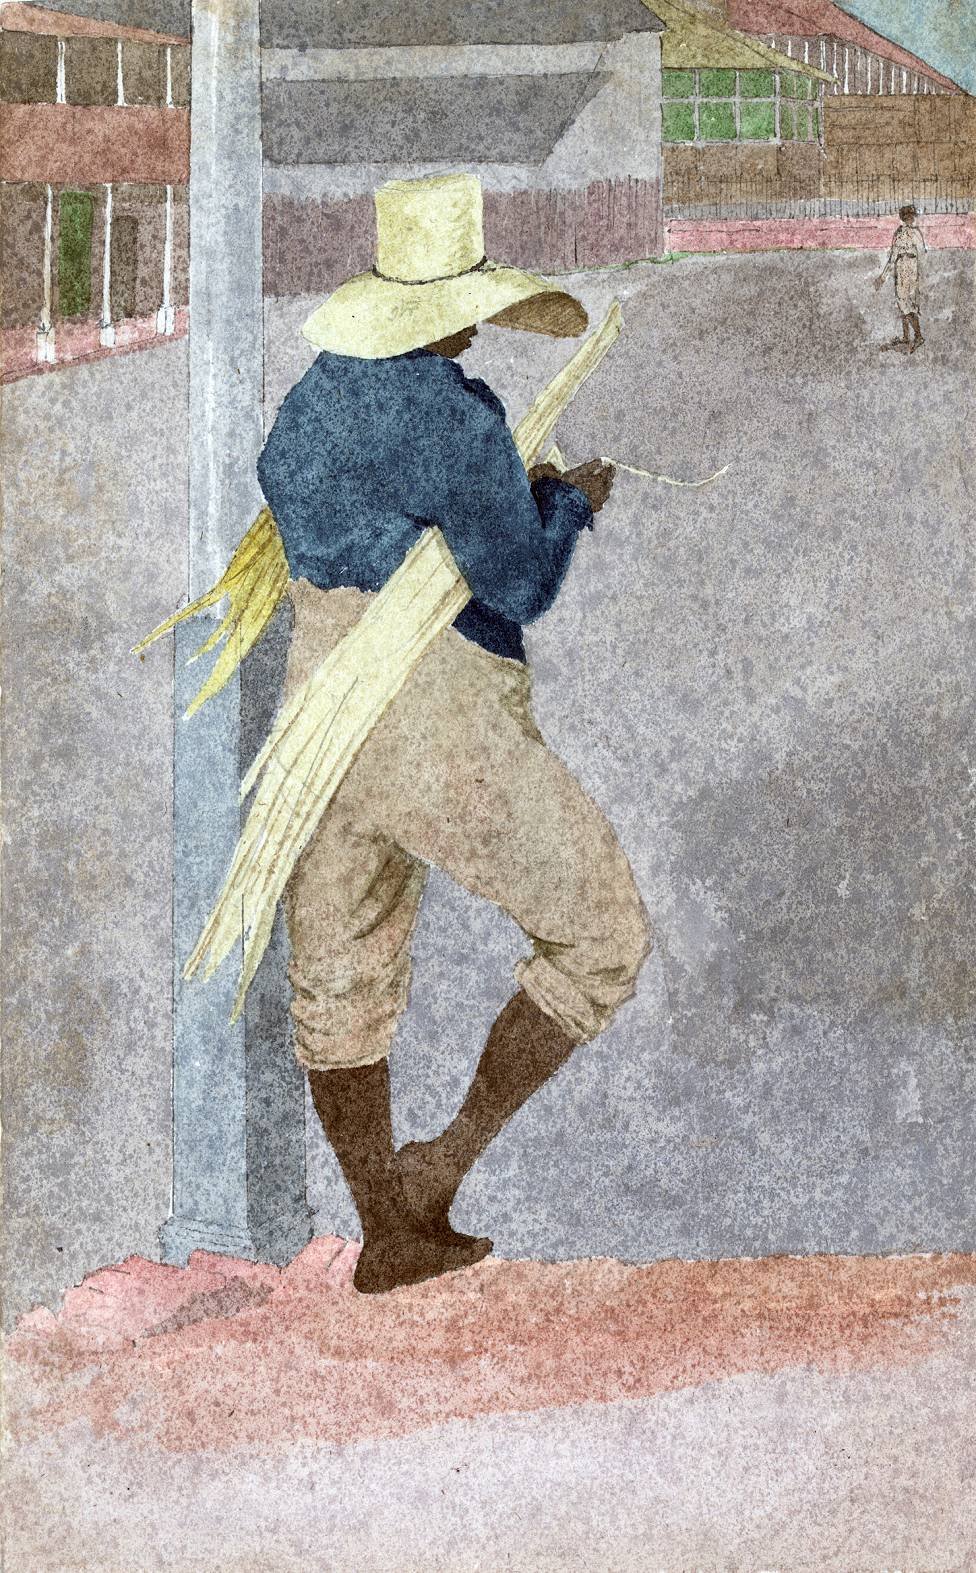 Esclavo pelando caña en Jamaica, pintado por el artista inglés William Berryman, entre 1808-1816